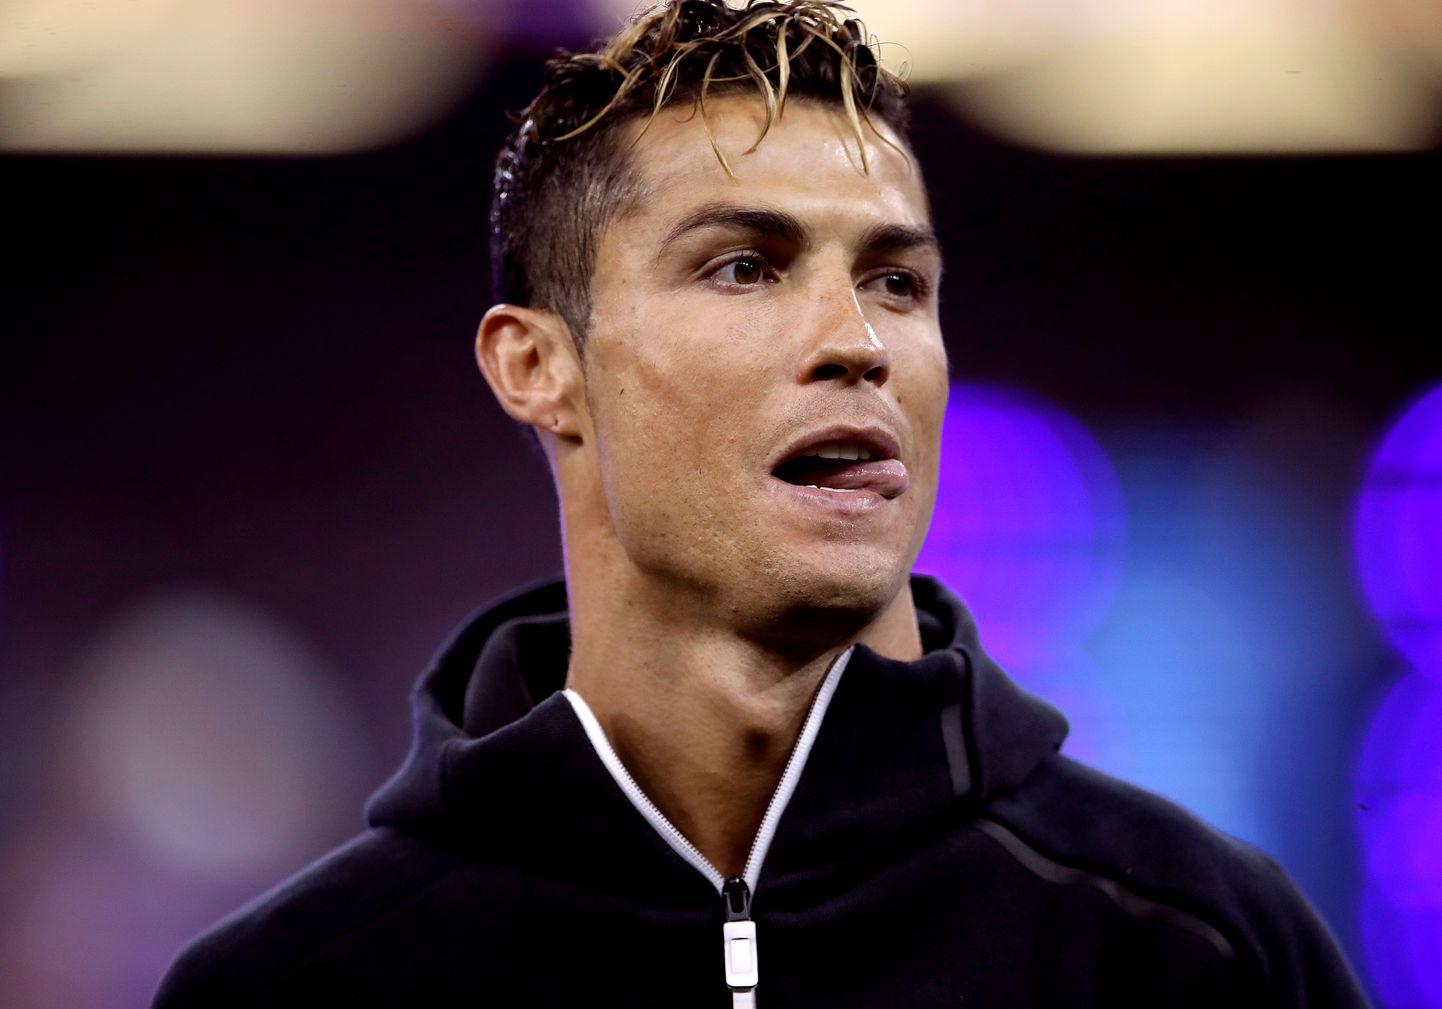 Kas praegu viiemängulise mängukeelu all viibiv Cristiano Ronaldo pärjatakse teist aastat järjest Euroopa parimaks jalgpalluriks?